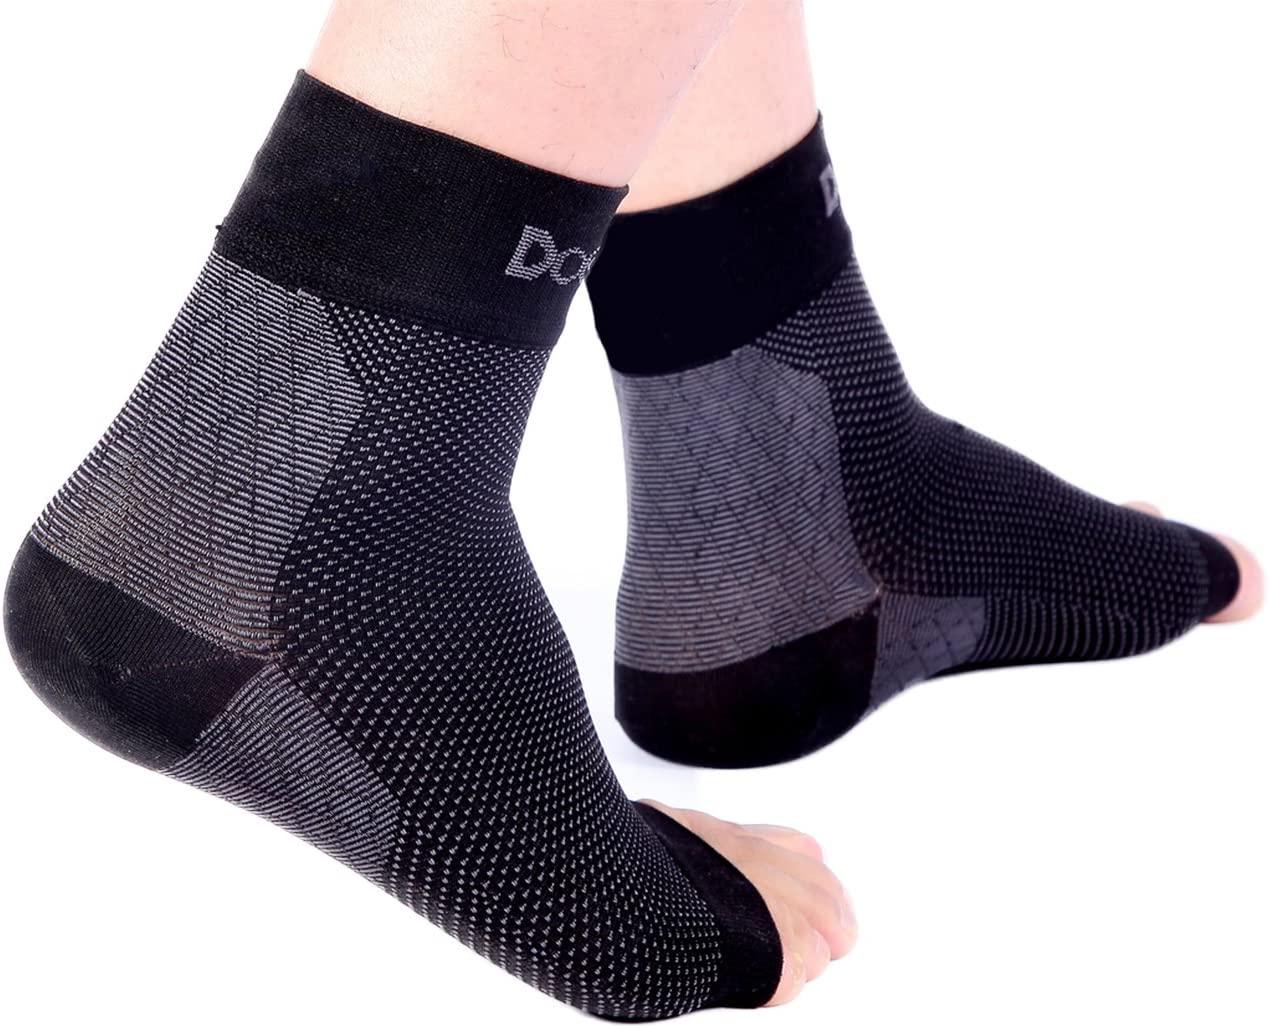 Doc Miller Compression Ankle Brace Socks Plantar Fasciitis Arch